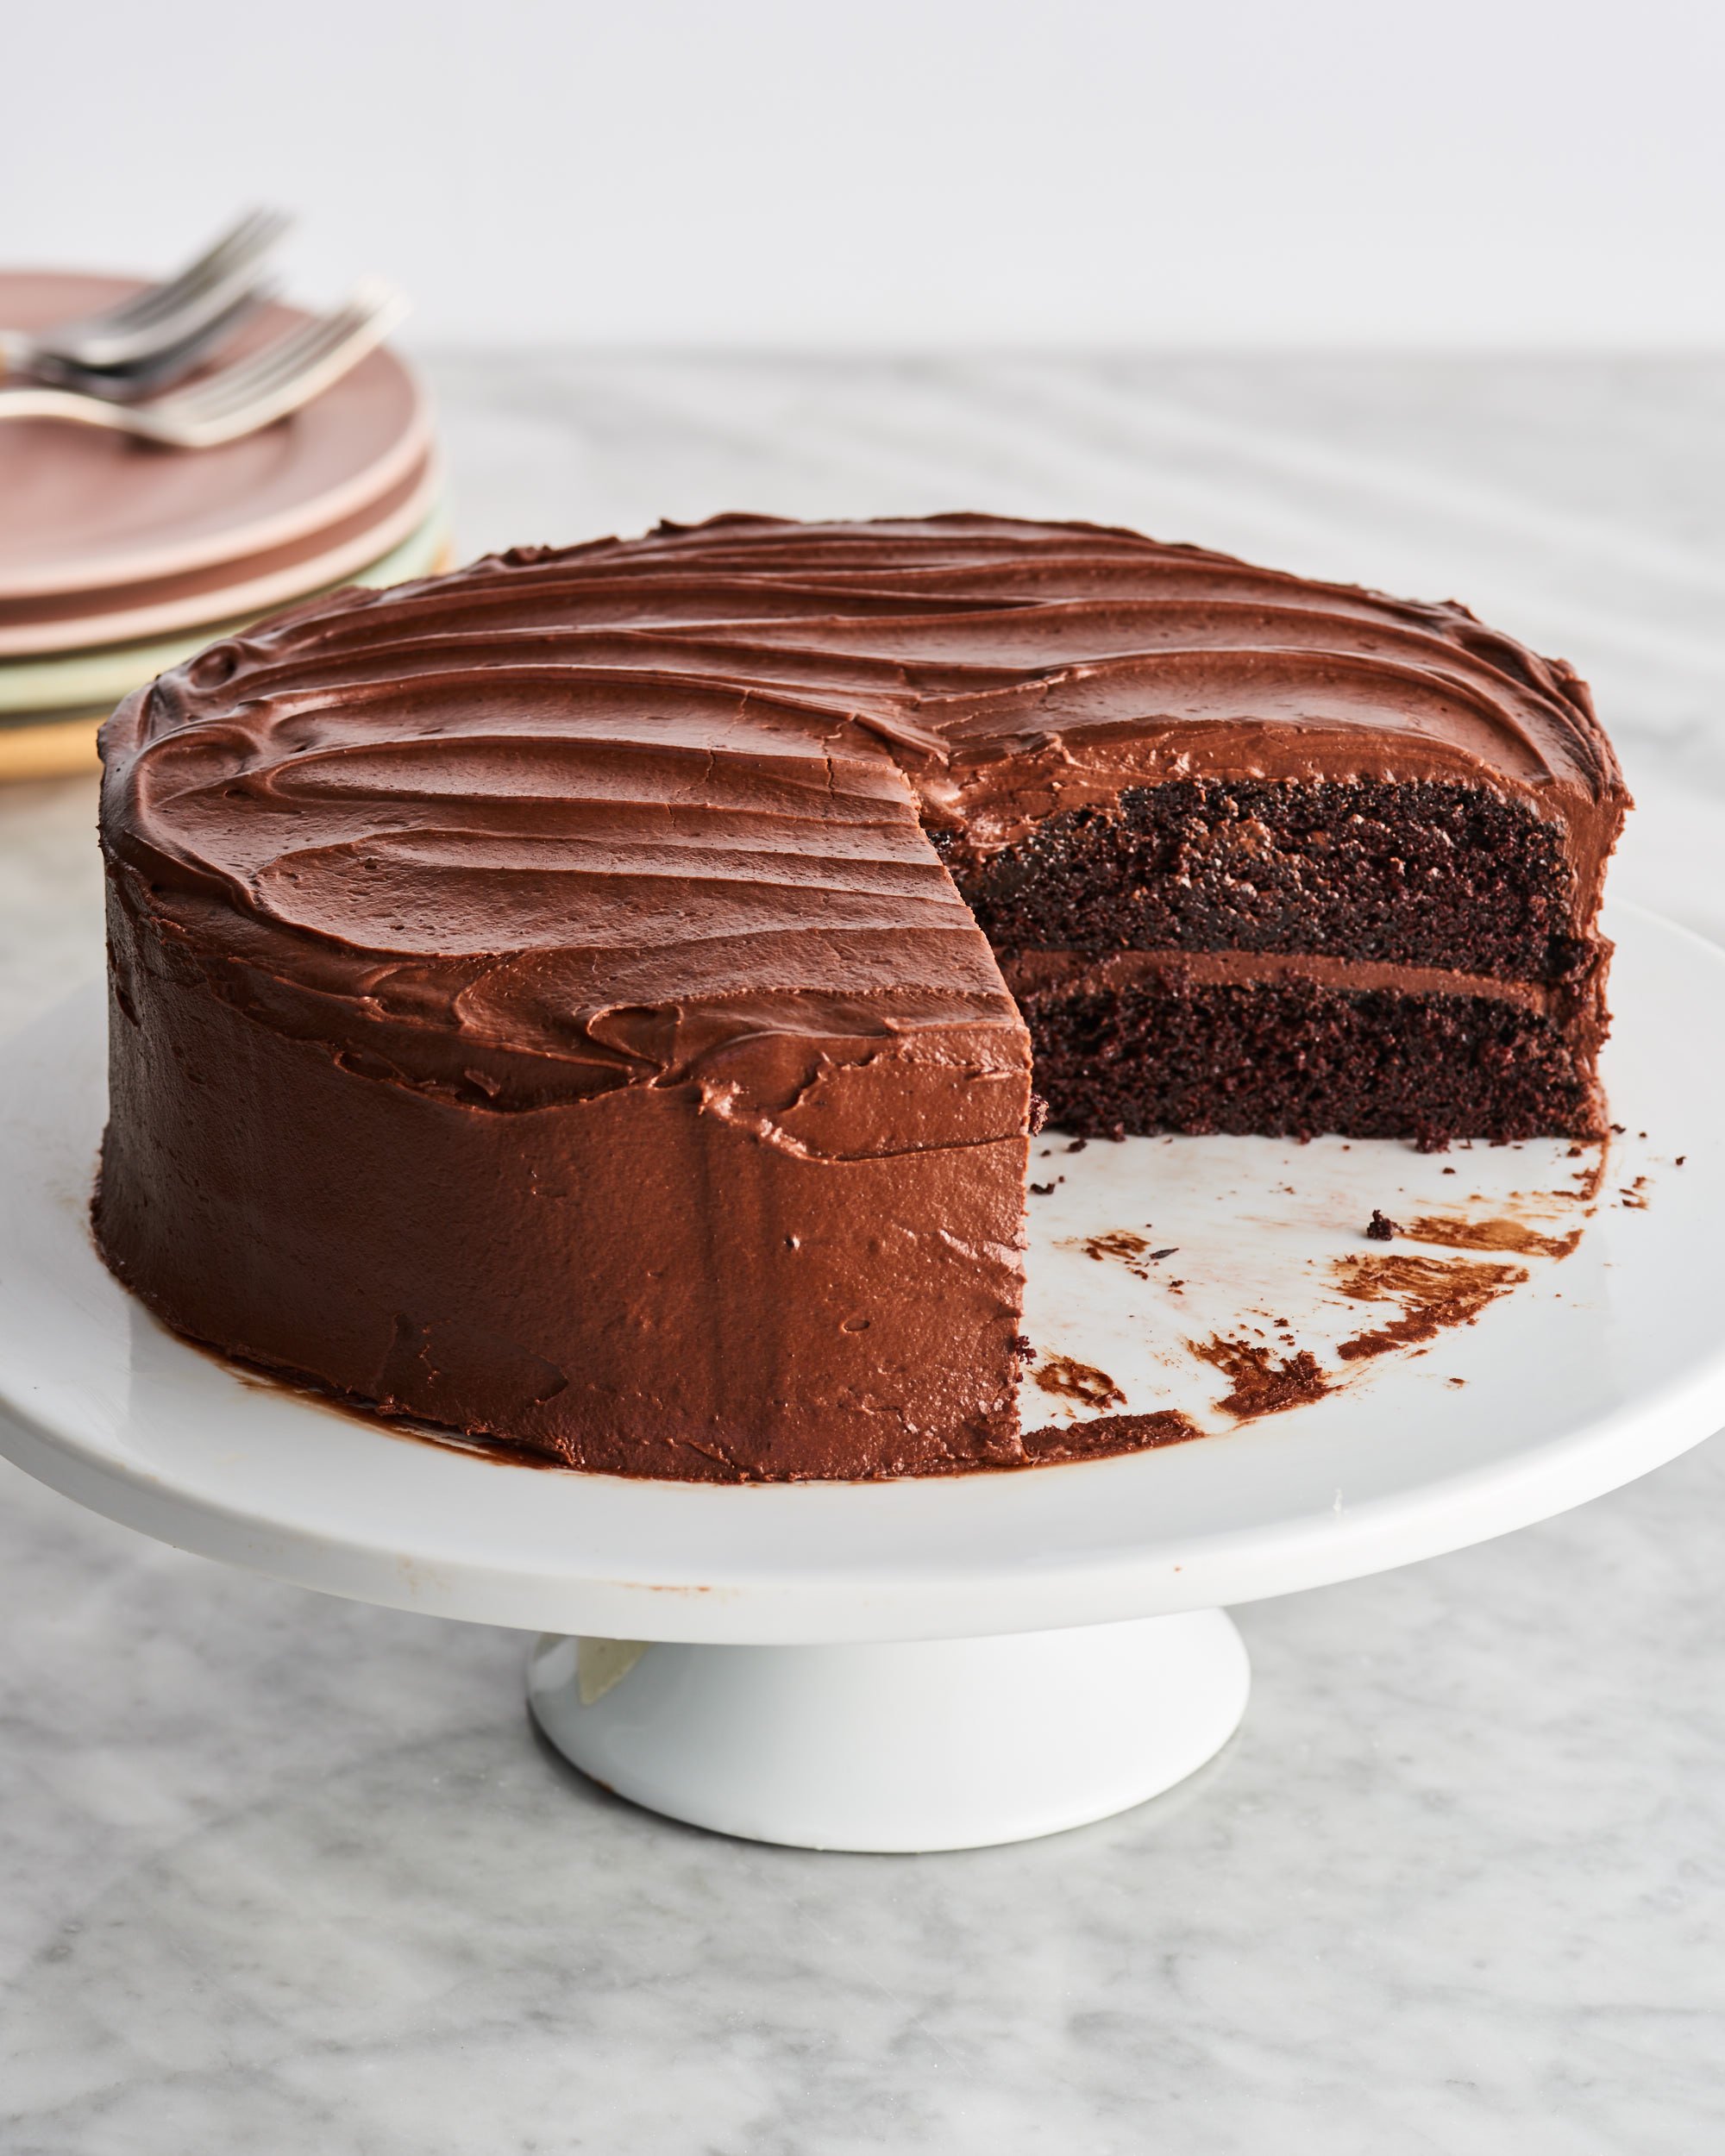 Hershey Chocolate Cake Recipe Moist